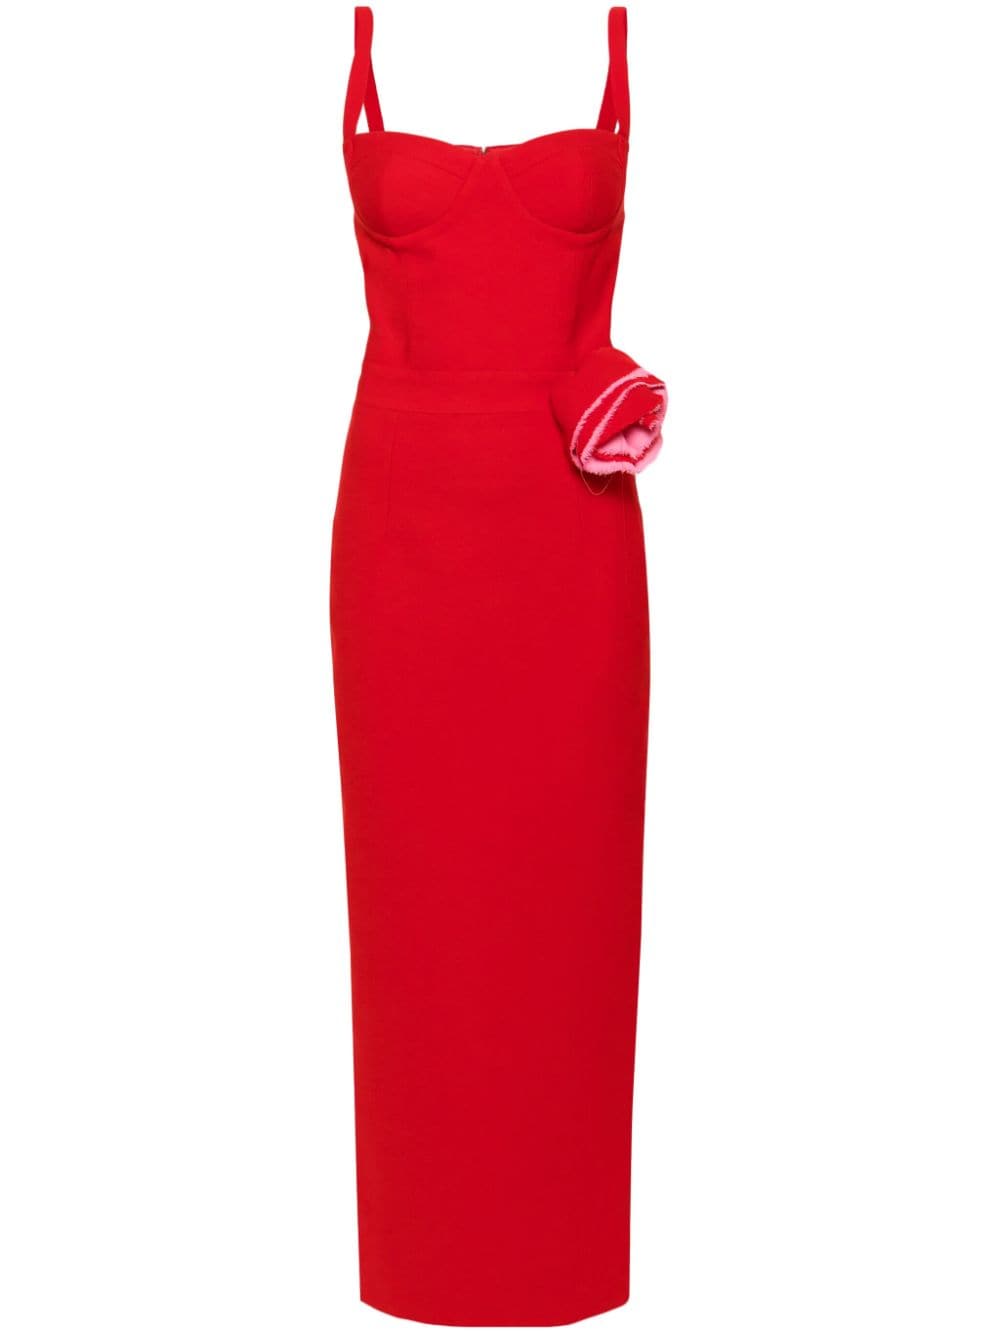 The New Arrivals Ilkyaz Ozel Monique Floral-appliqué Maxi Dress In Red